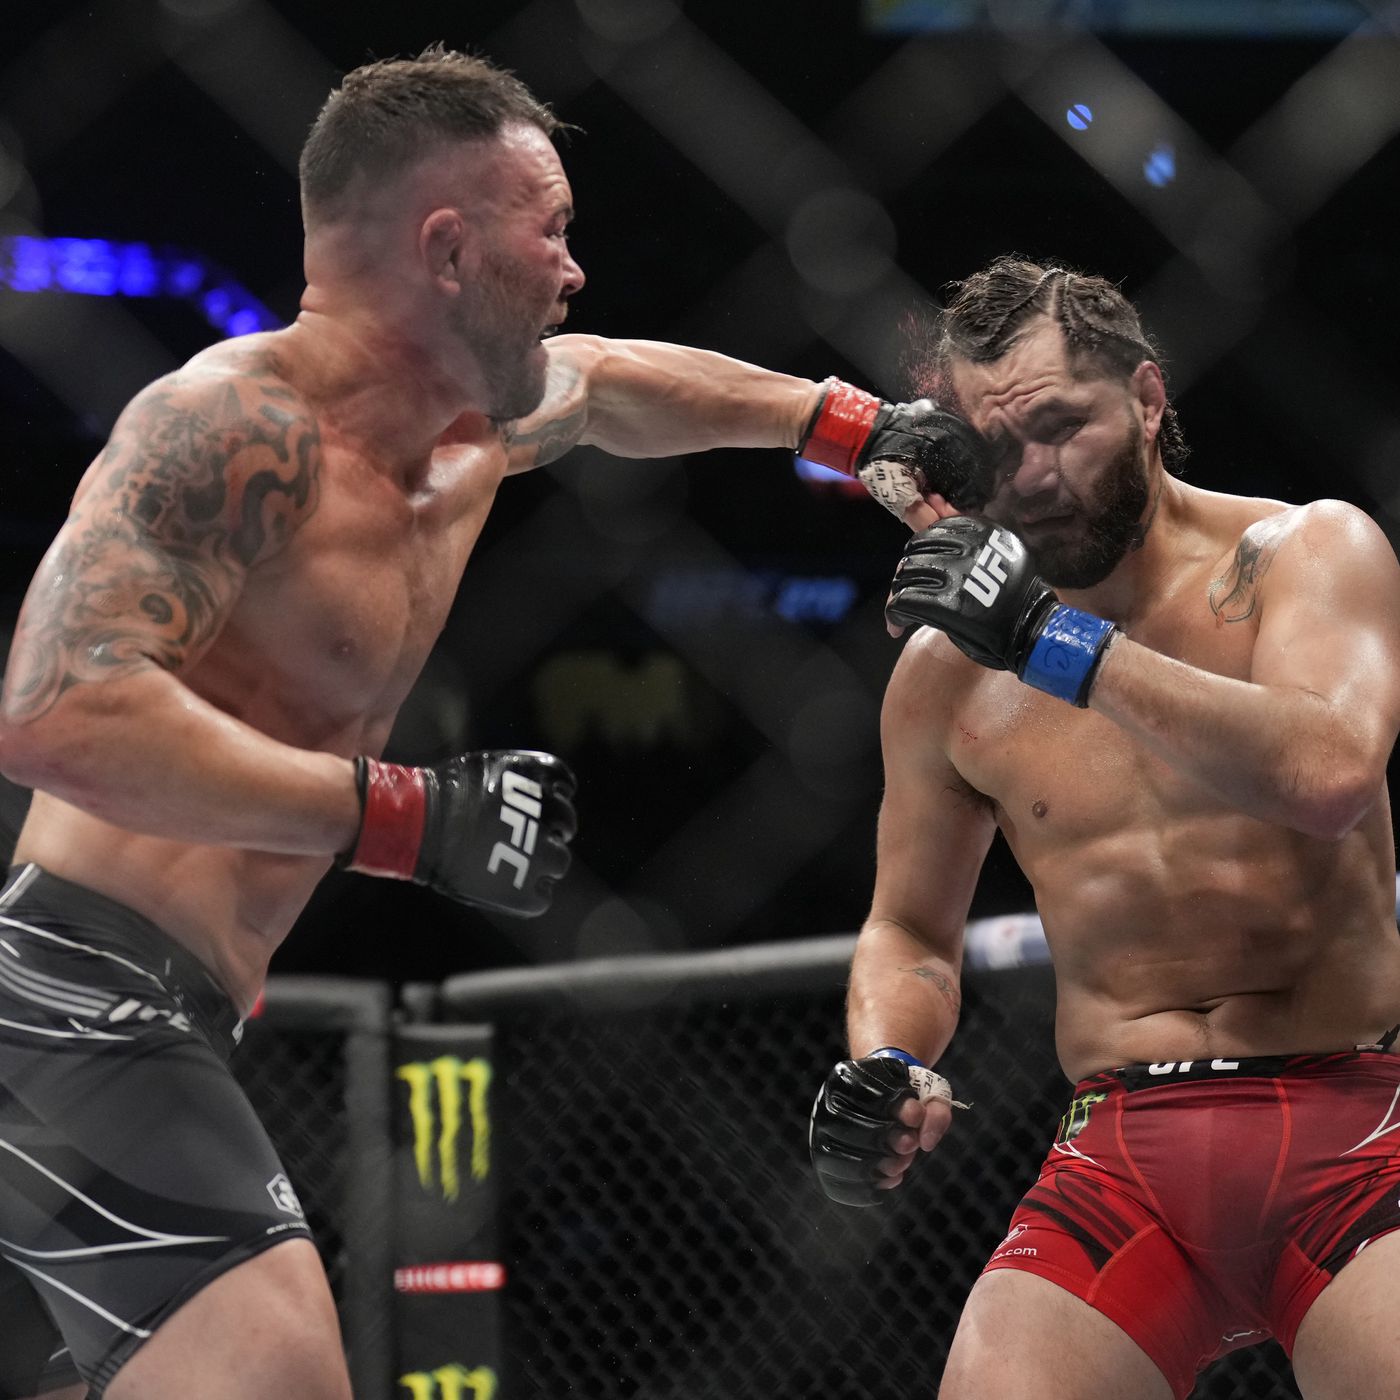 UFC: Colby Covington punching Jorge Masvidal